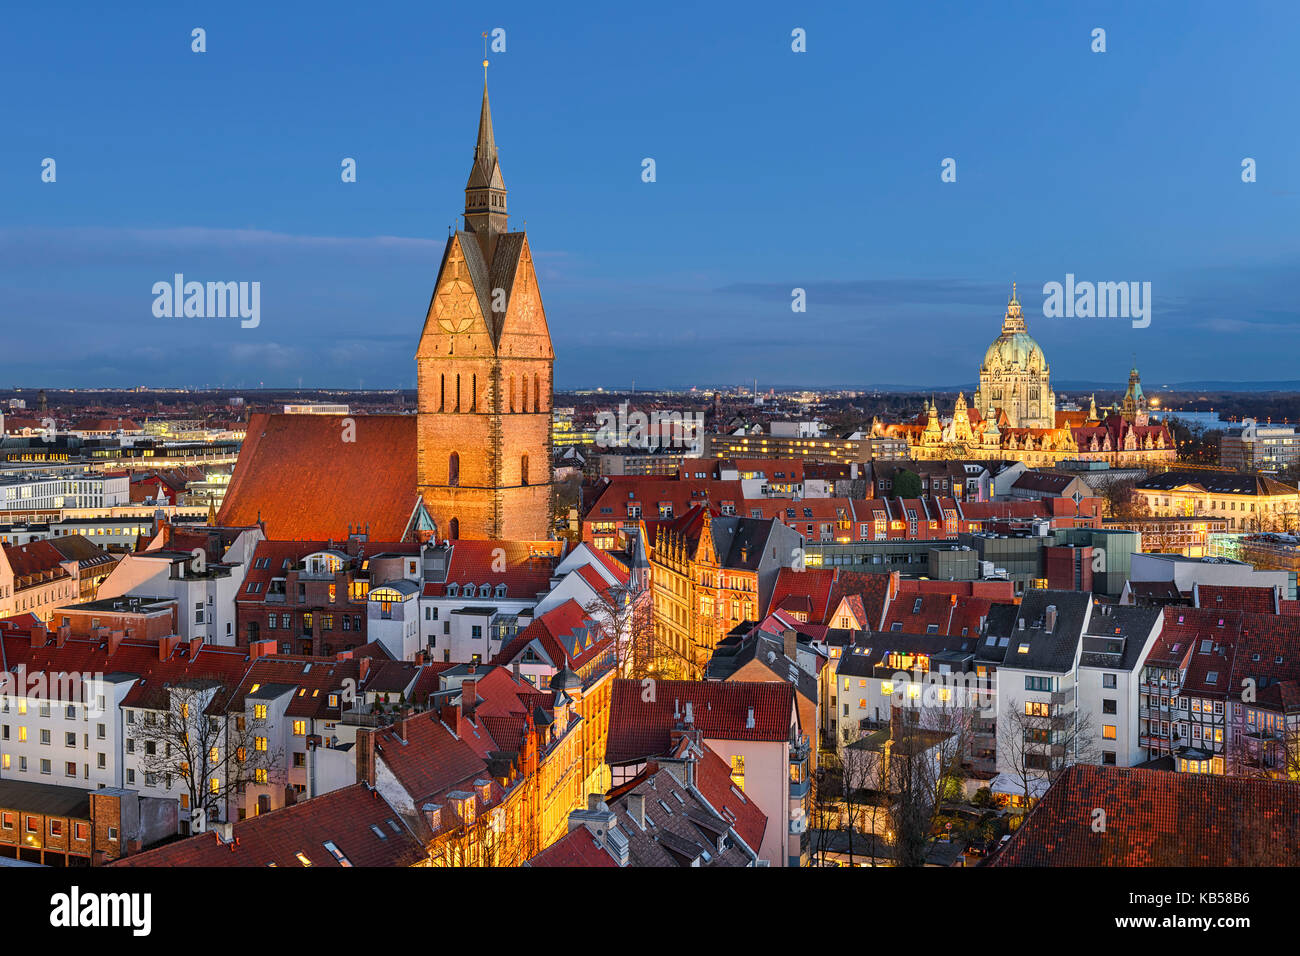 Altstadt von Hannover, Deutschland in der Nacht mit Marktkirche in den Vordergrund und Rathaus im Hintergrund Stockfoto